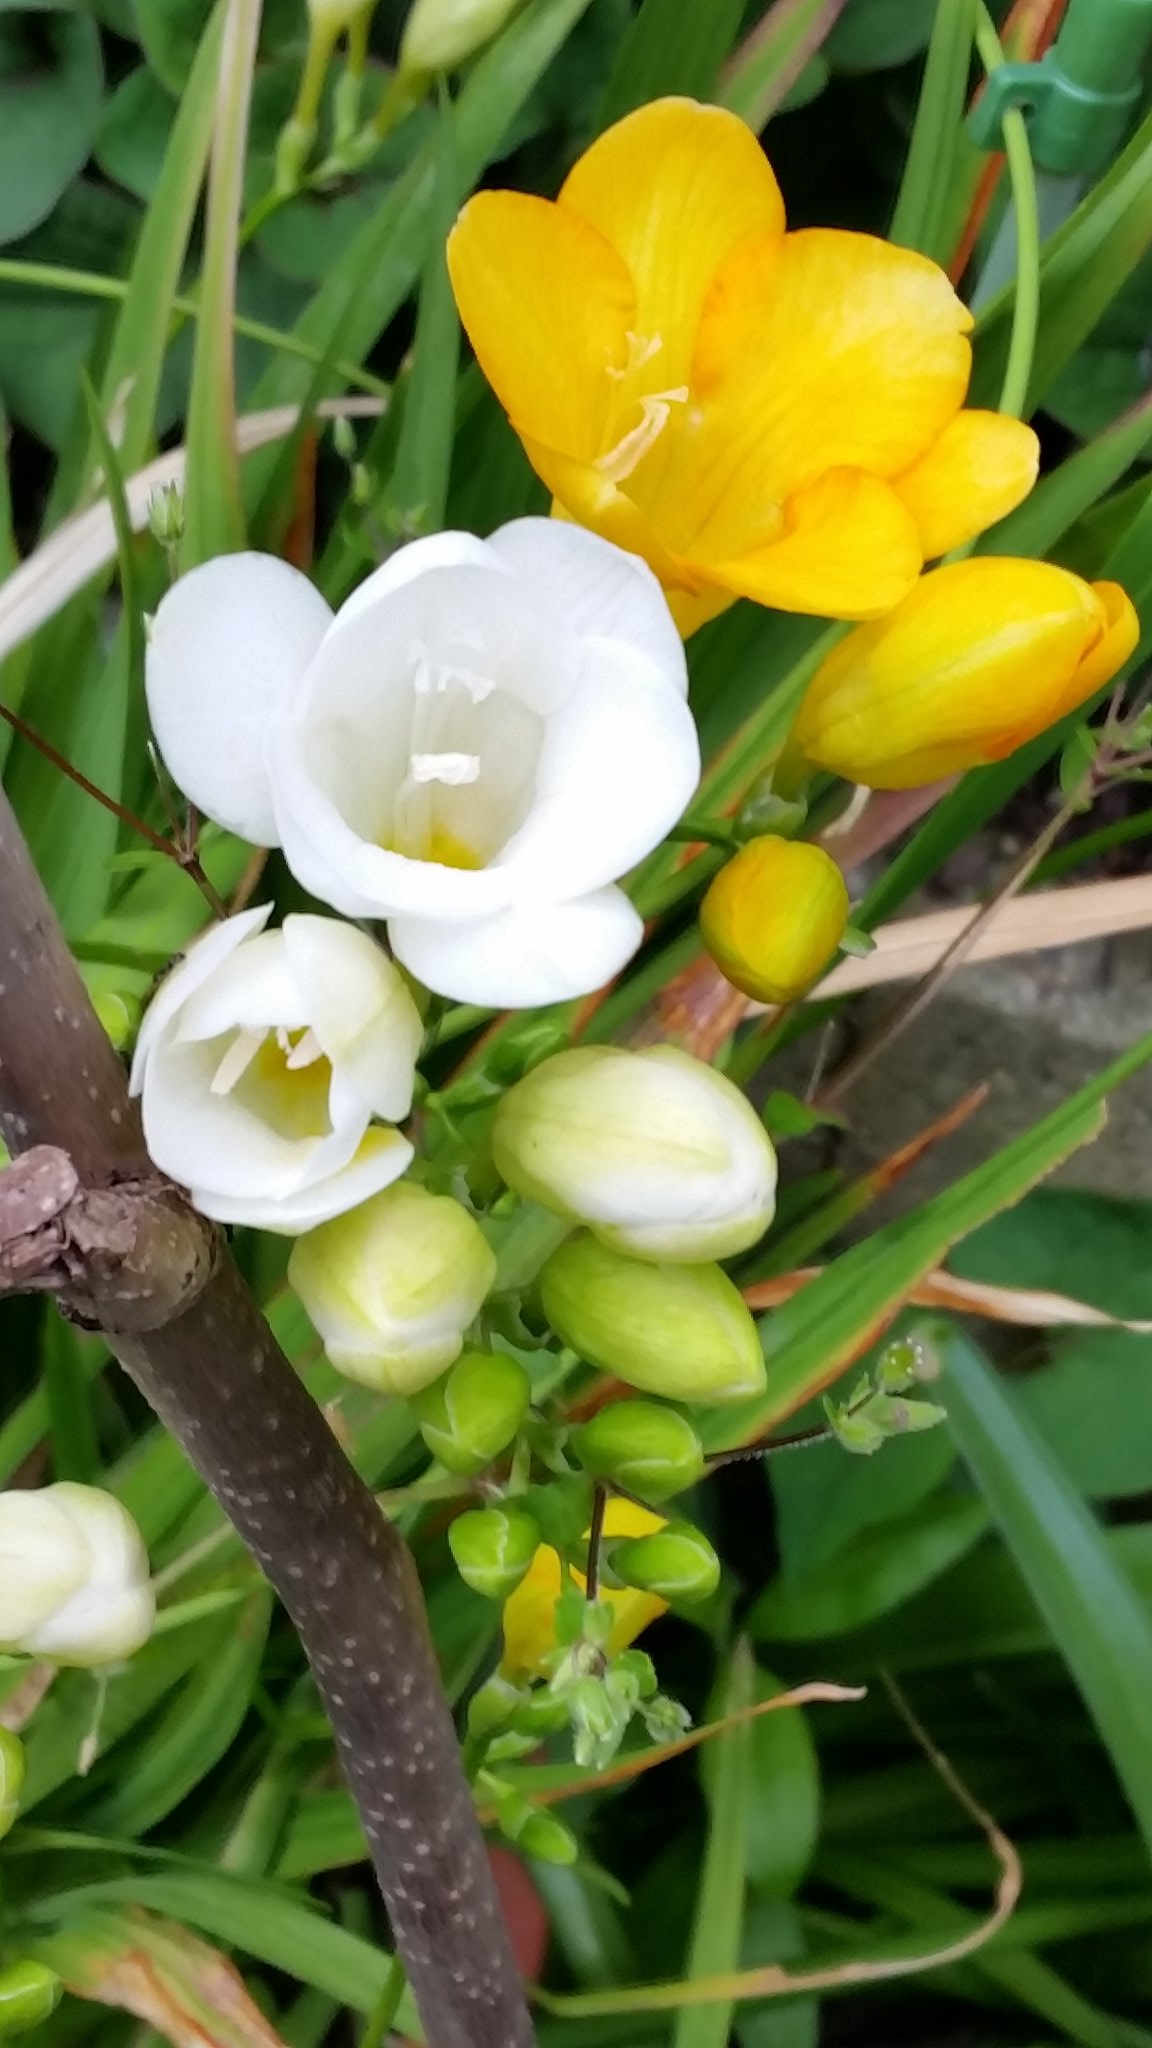 毘藍 山風蠱 元16tons 希望のはな として知られるフリージアですが 皆さんはそれがどんな花か知っていますか フリージアは南アフリカ原産のこんな花で 3月から6月に咲きます 甘い香りを放ちますが 香水に使われる香料は全て合成品です 花言葉